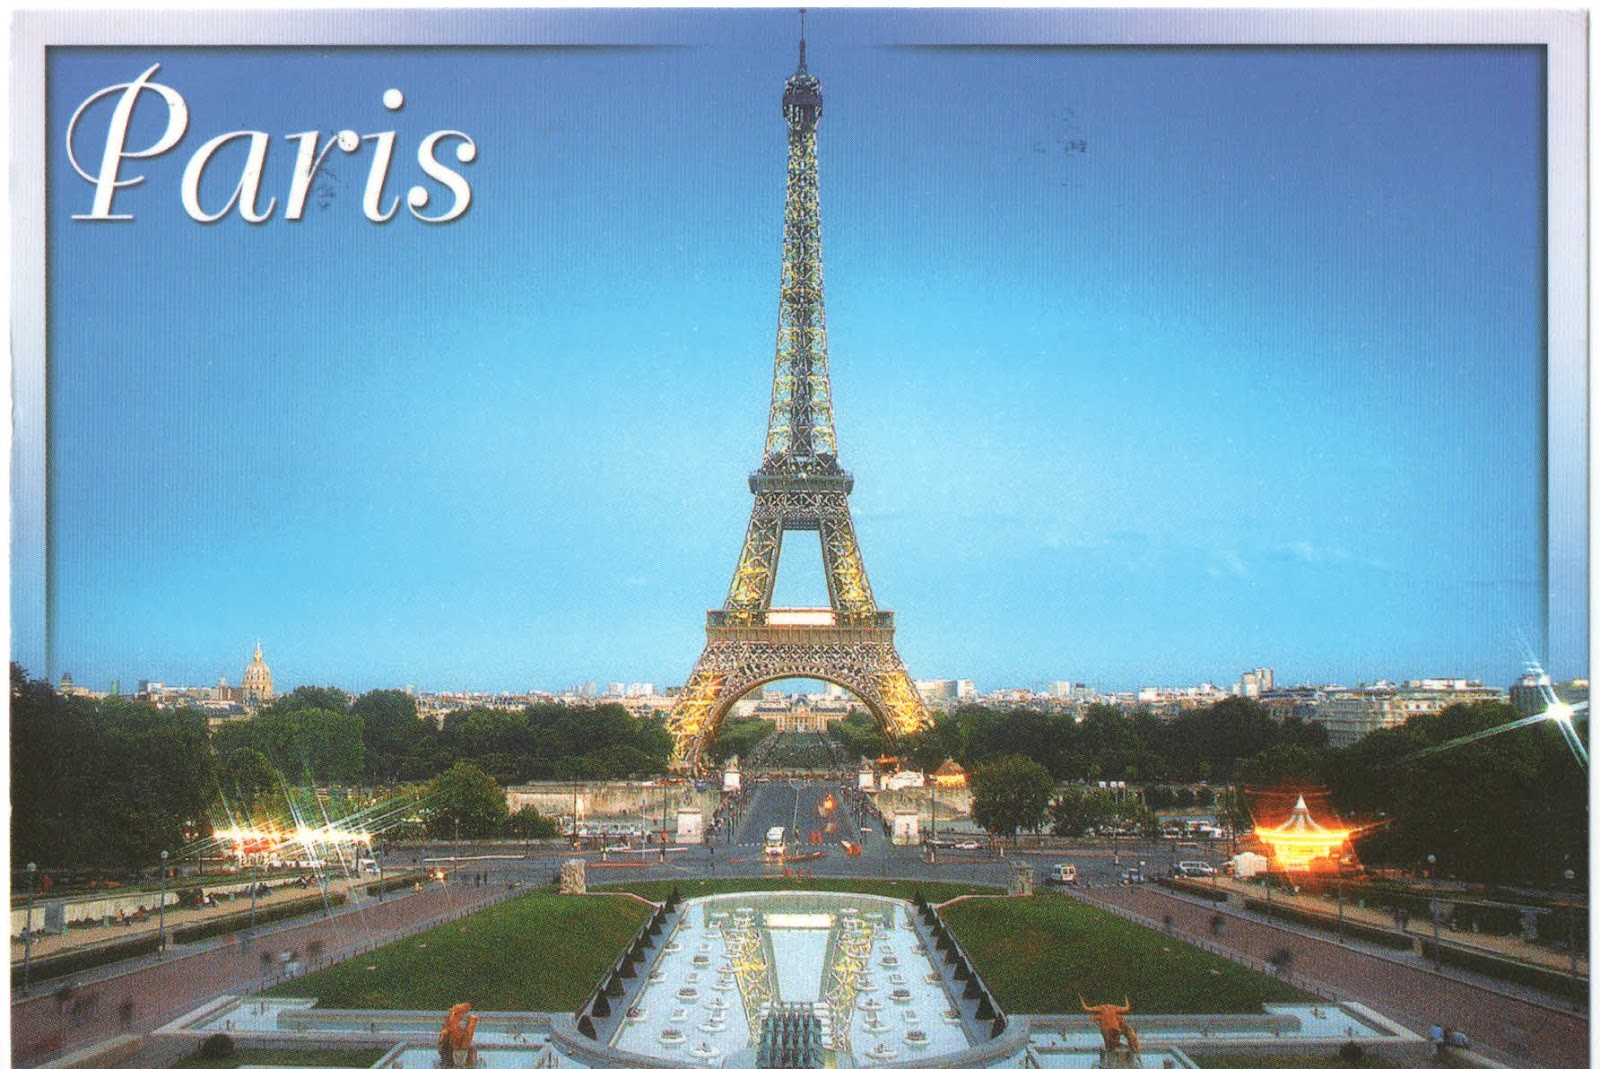 A symbol of paris. Открытка Париж. Открытка из Парижа. Париж открытка с достопримечательностями. Открытка Франция.